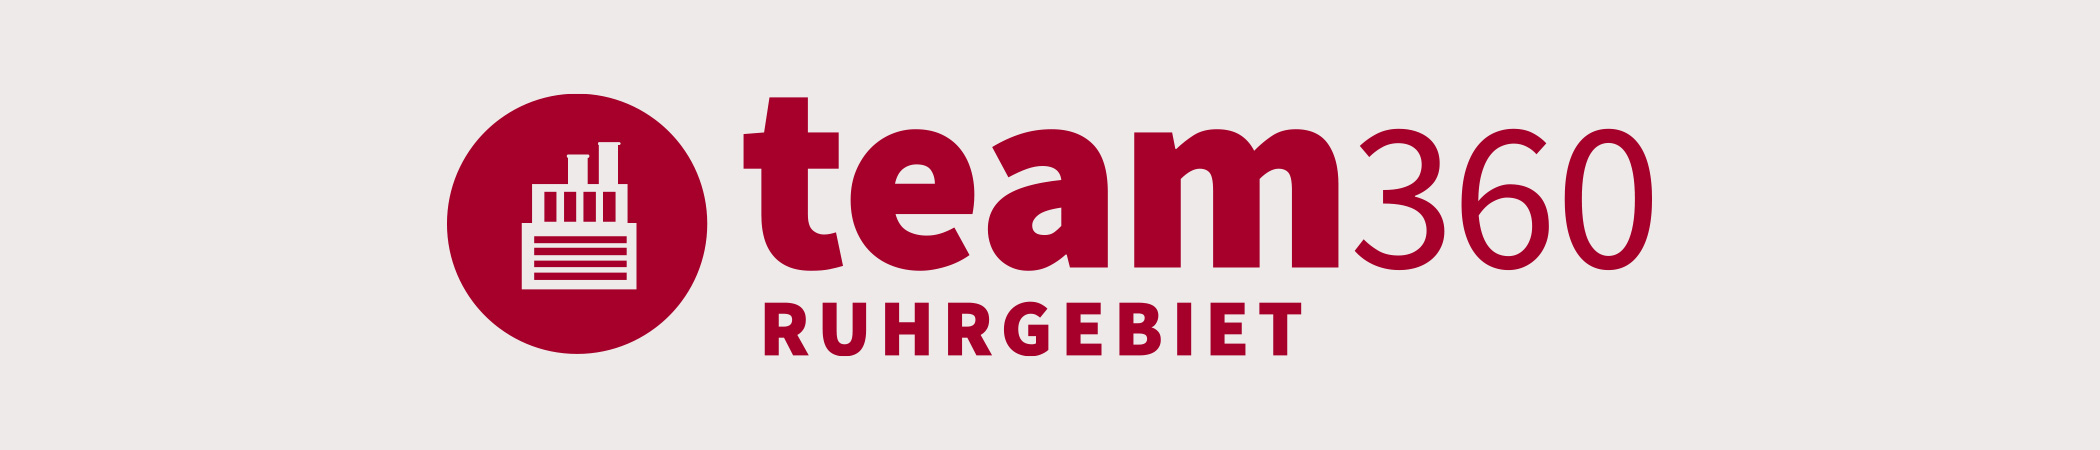 Team Ruhrgebiet | 360 Grad Rundgänge im Ruhrgebiet